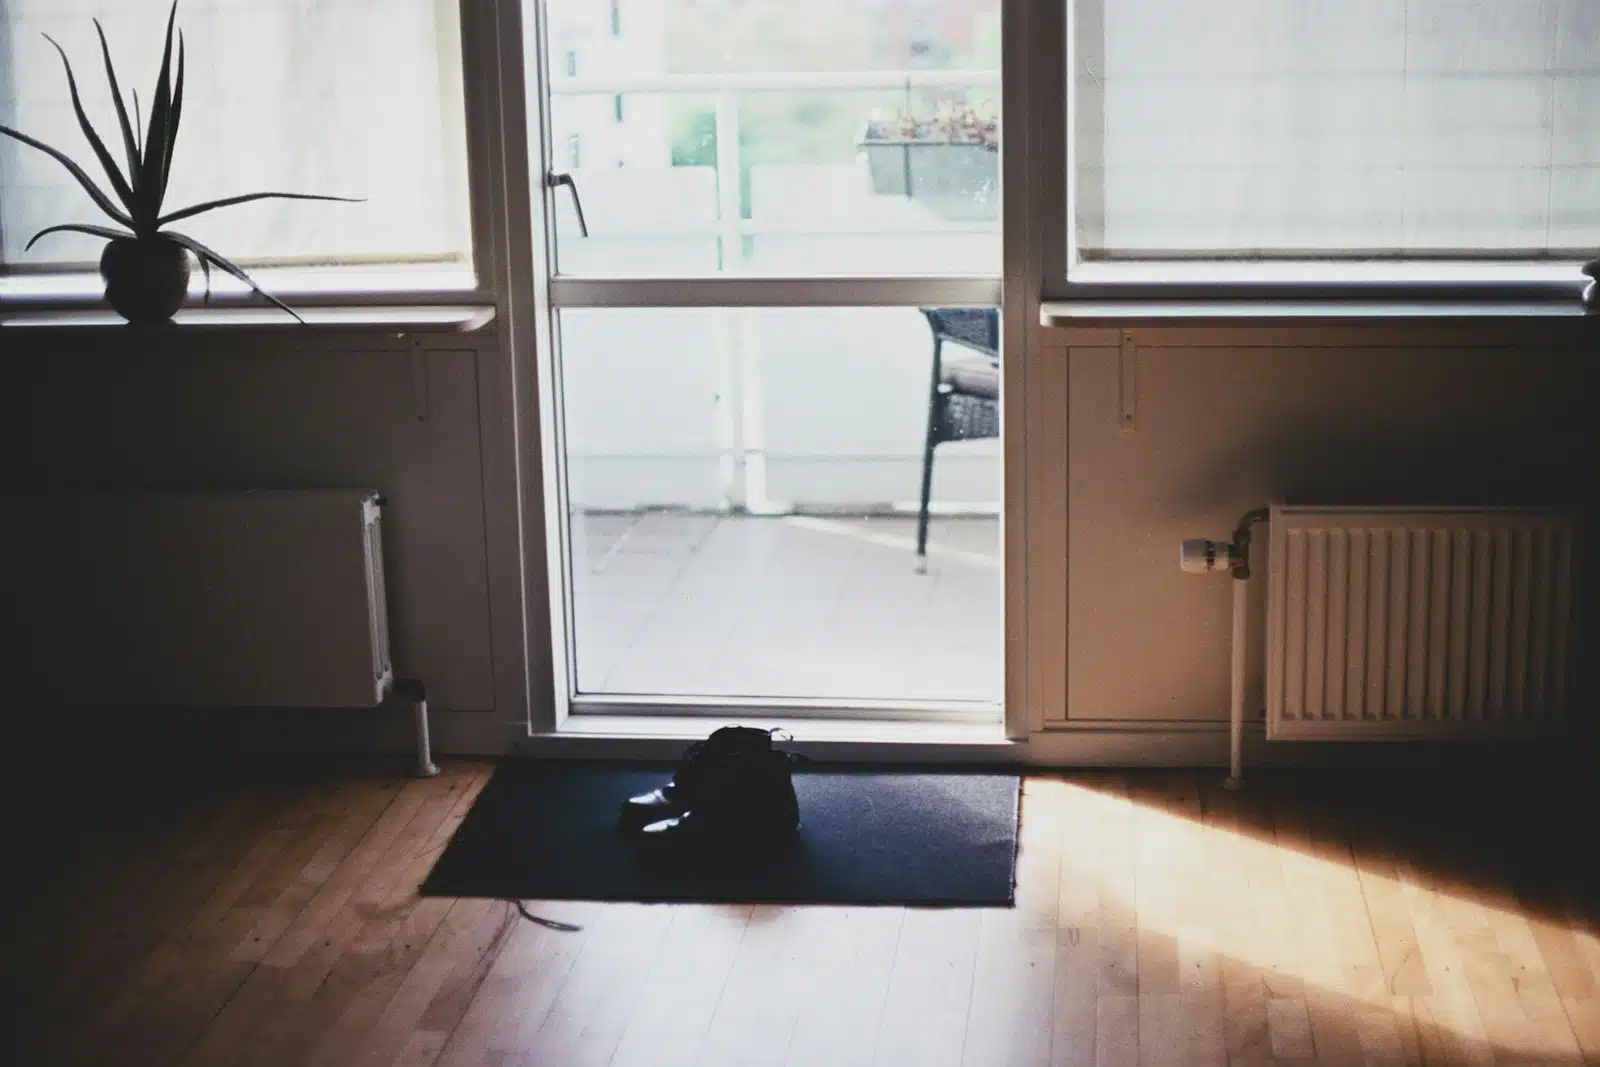 black puppy on door mat inside room